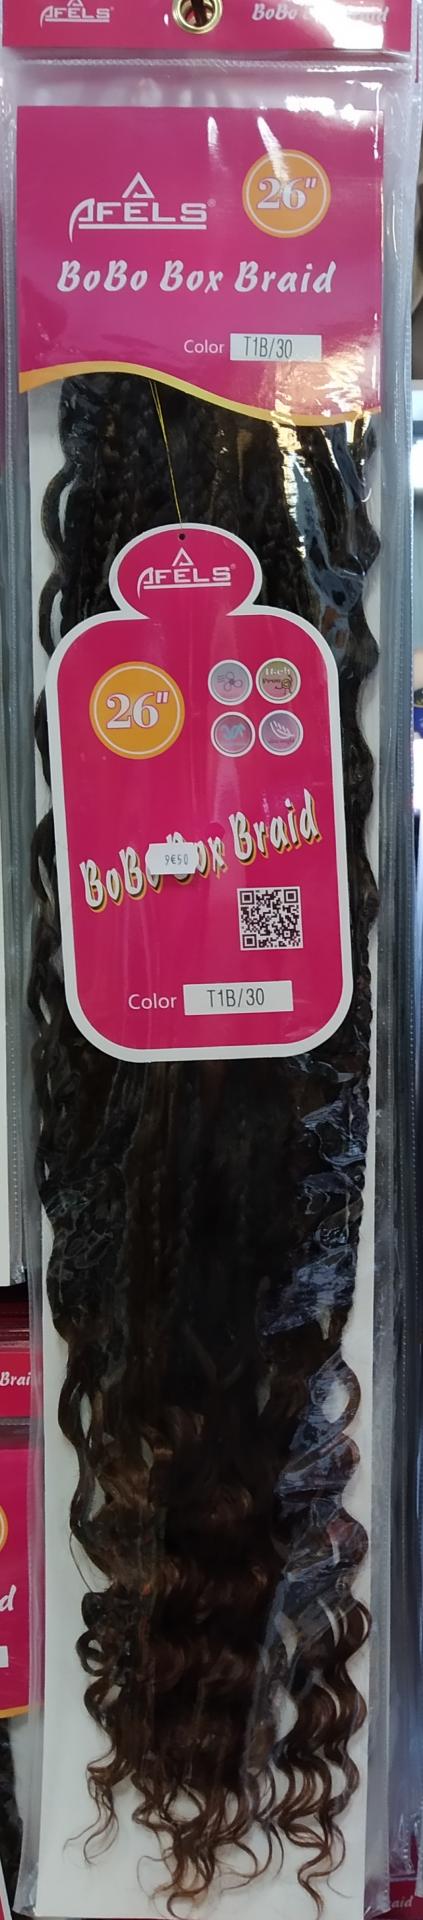 Bobo box braid 26